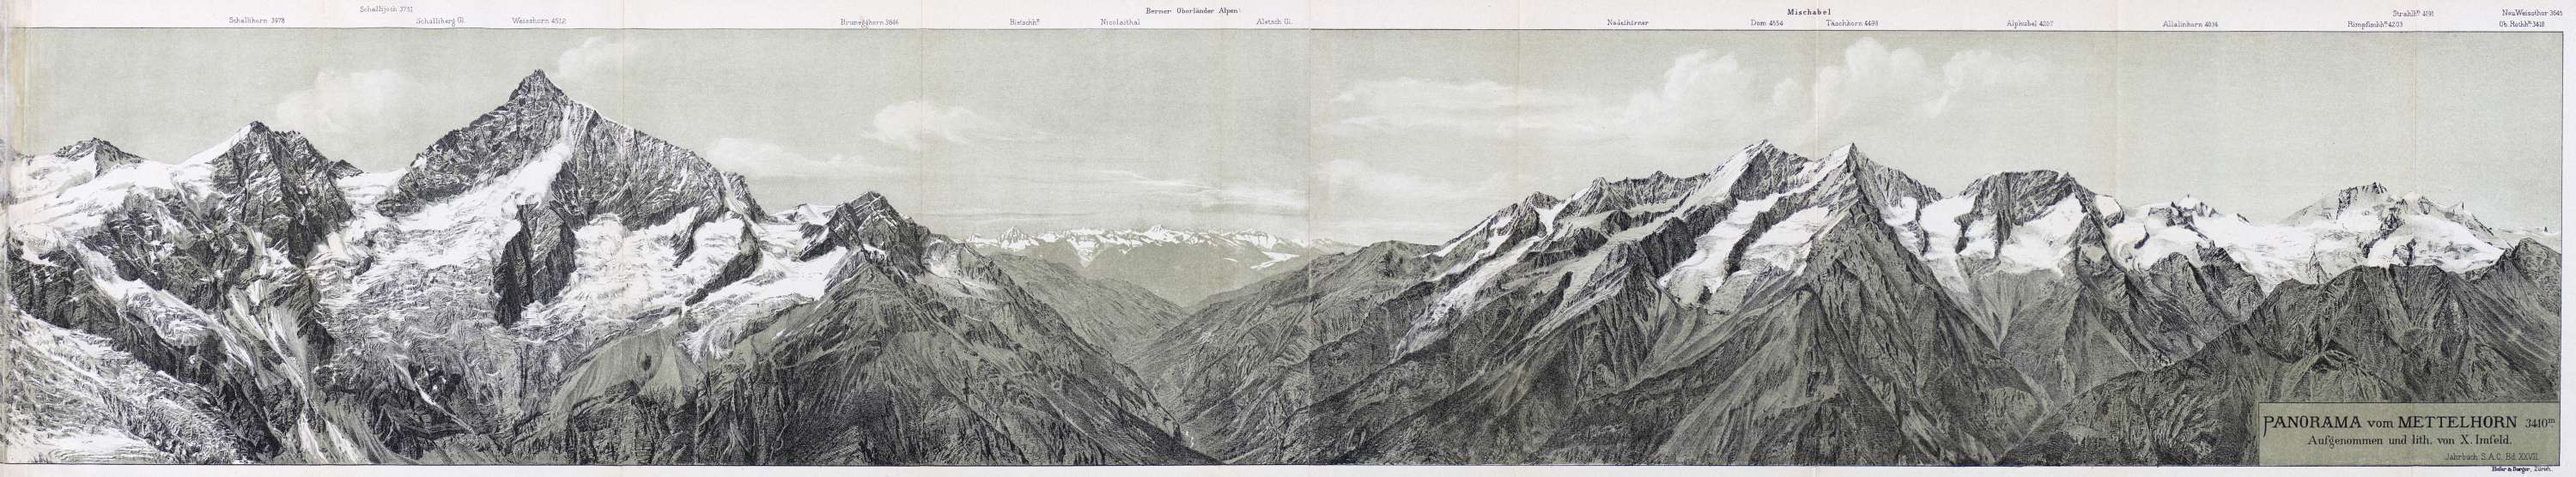 Meister der Alpentopografie